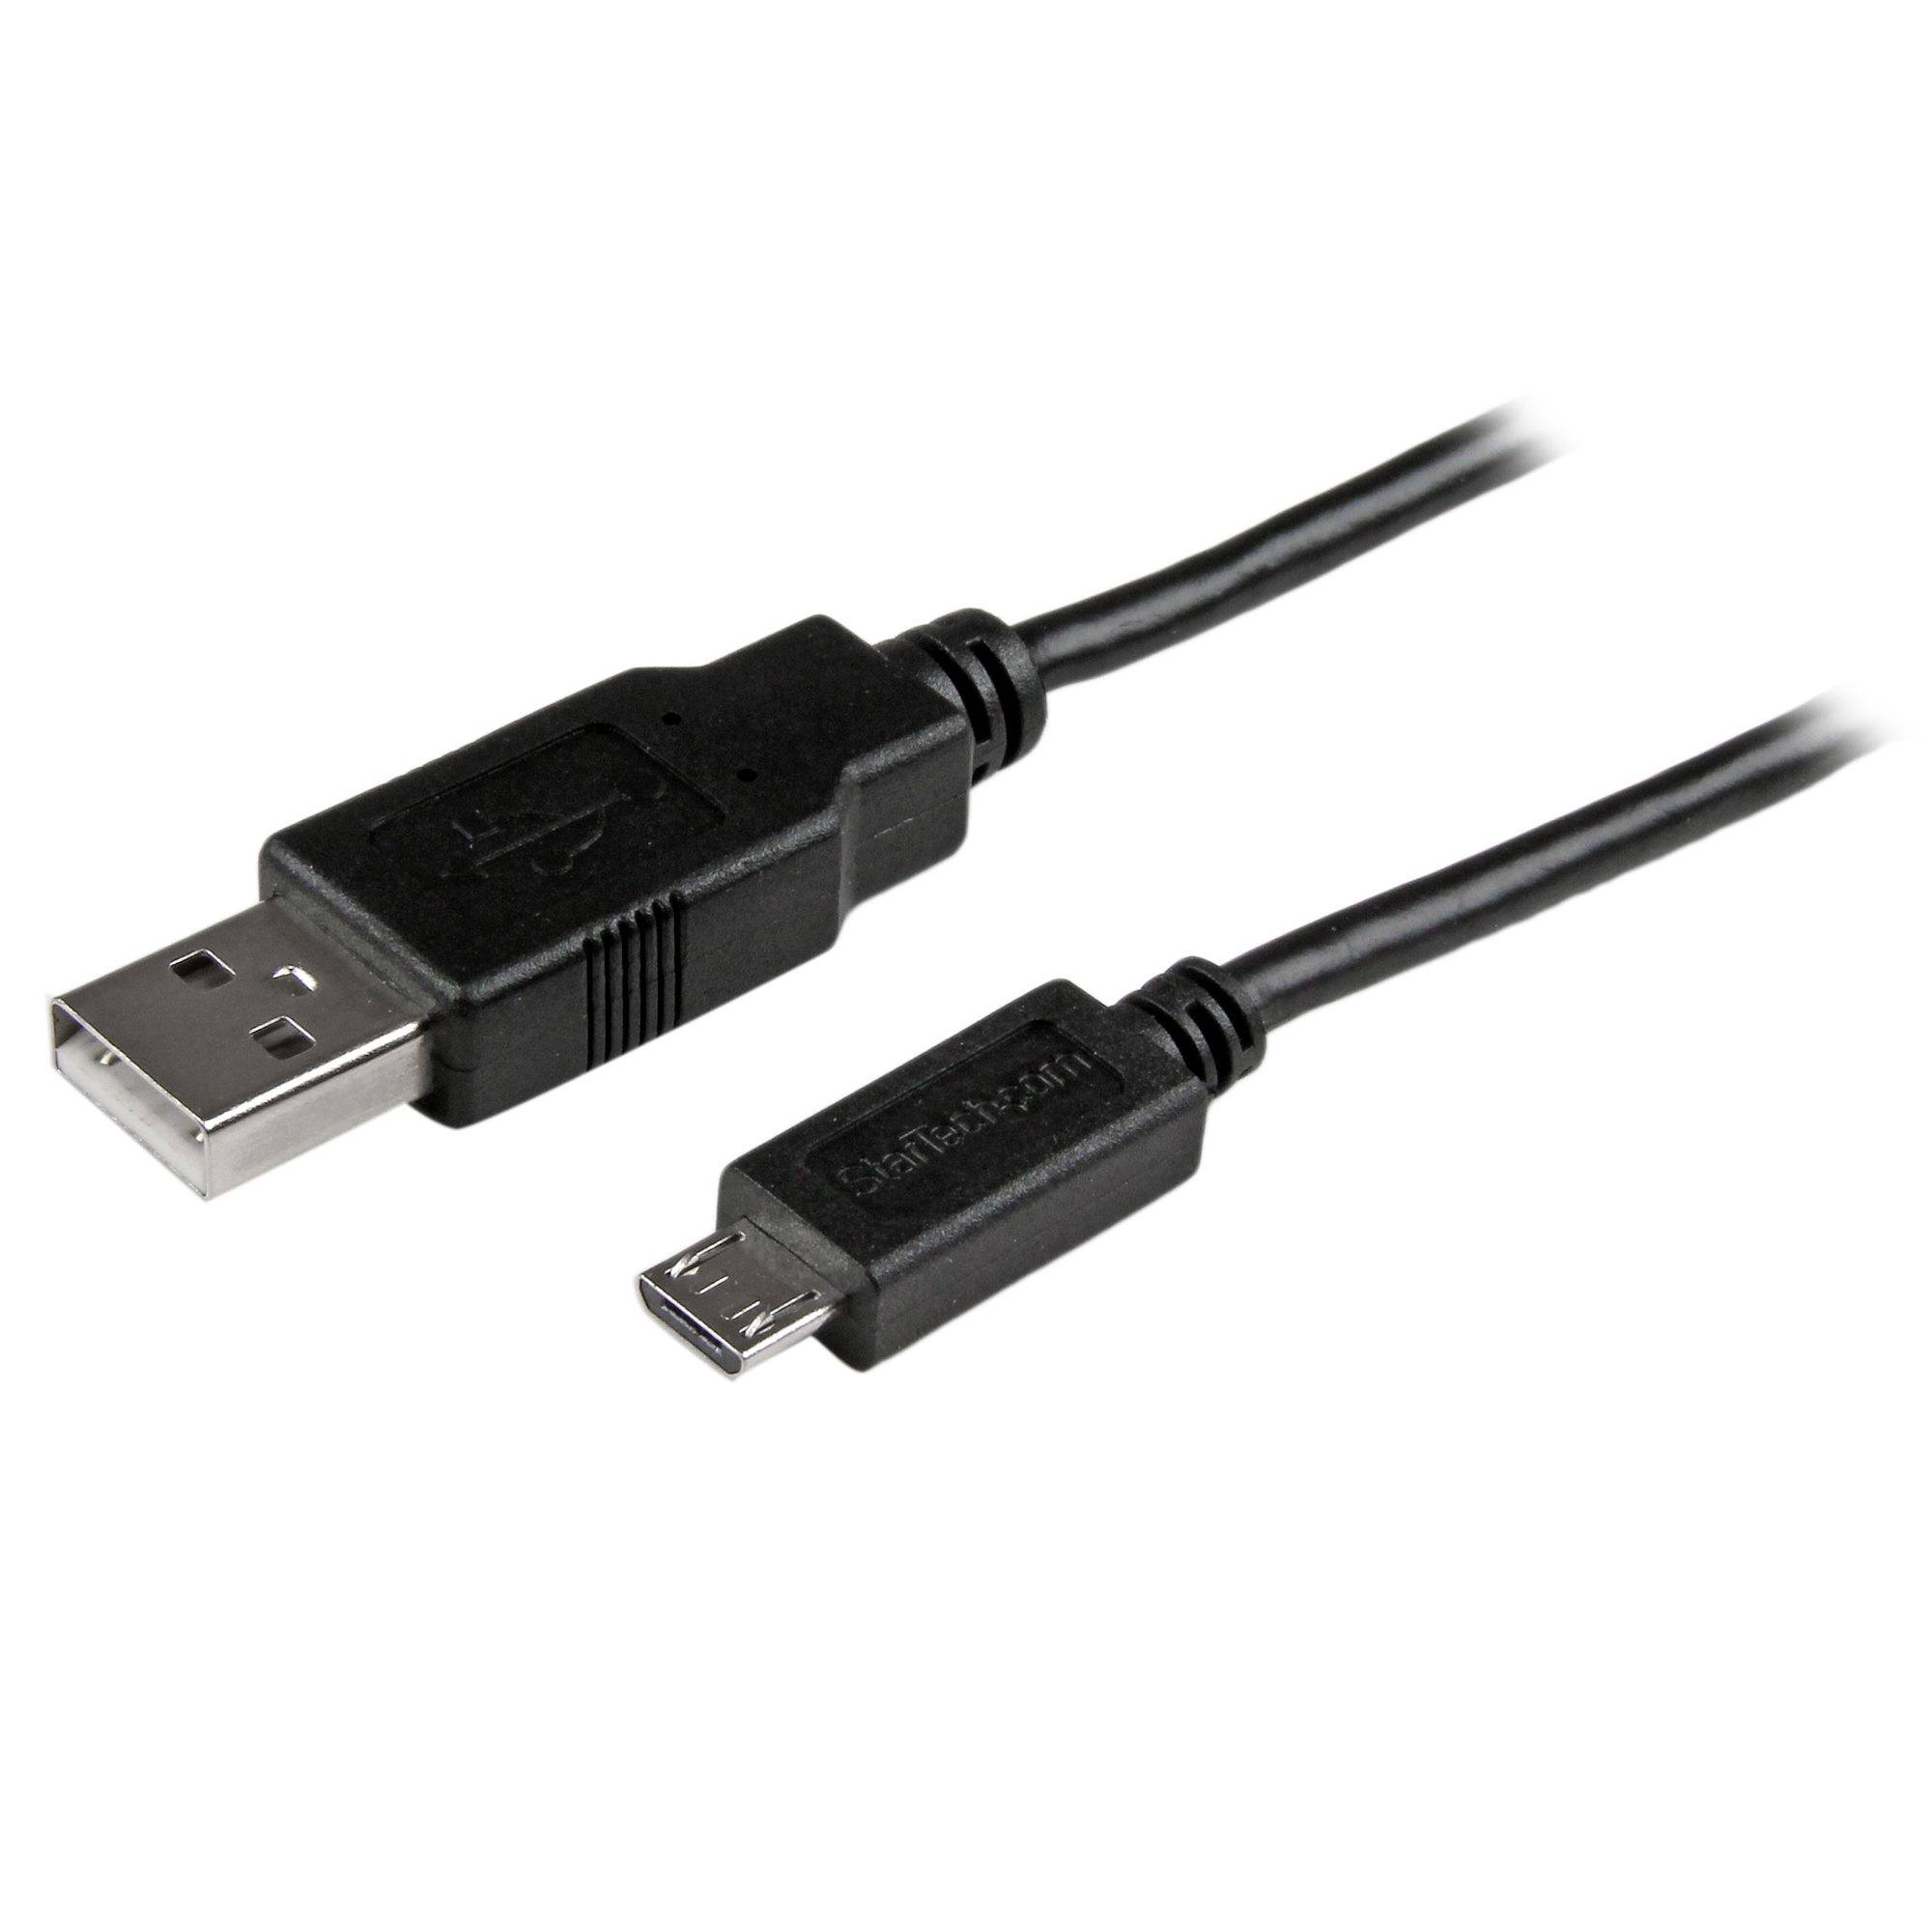 Rca Informatique - Image du produit : CABLE CHARGE / SYNCHRONISATION USB A VERS MICRO B SLIM 3M NOIR